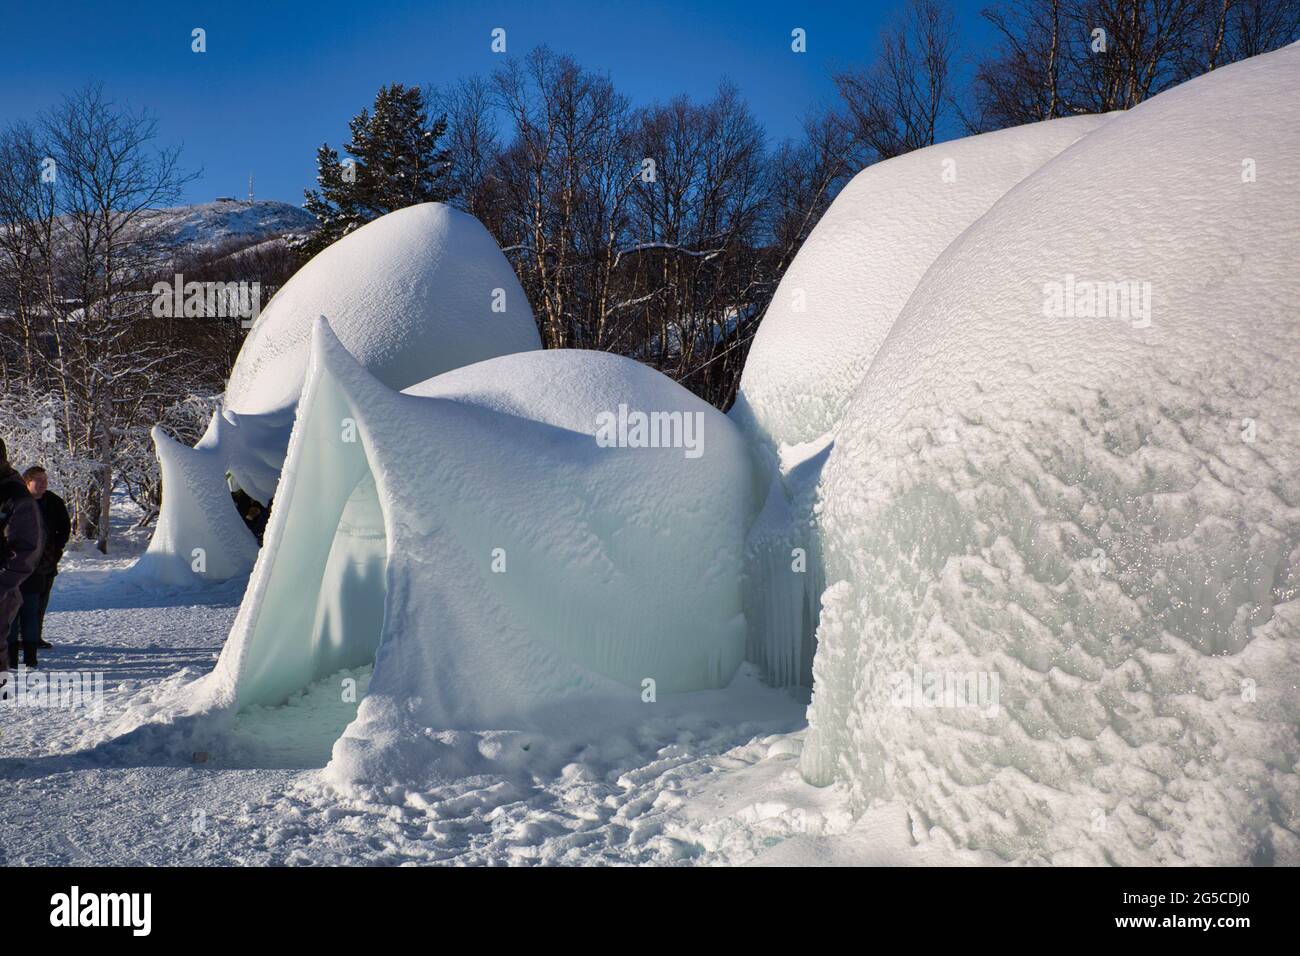 Strutture esterne innevate e ghiacciate realizzate dall'uomo in Norvegia, Scandinavia Foto Stock